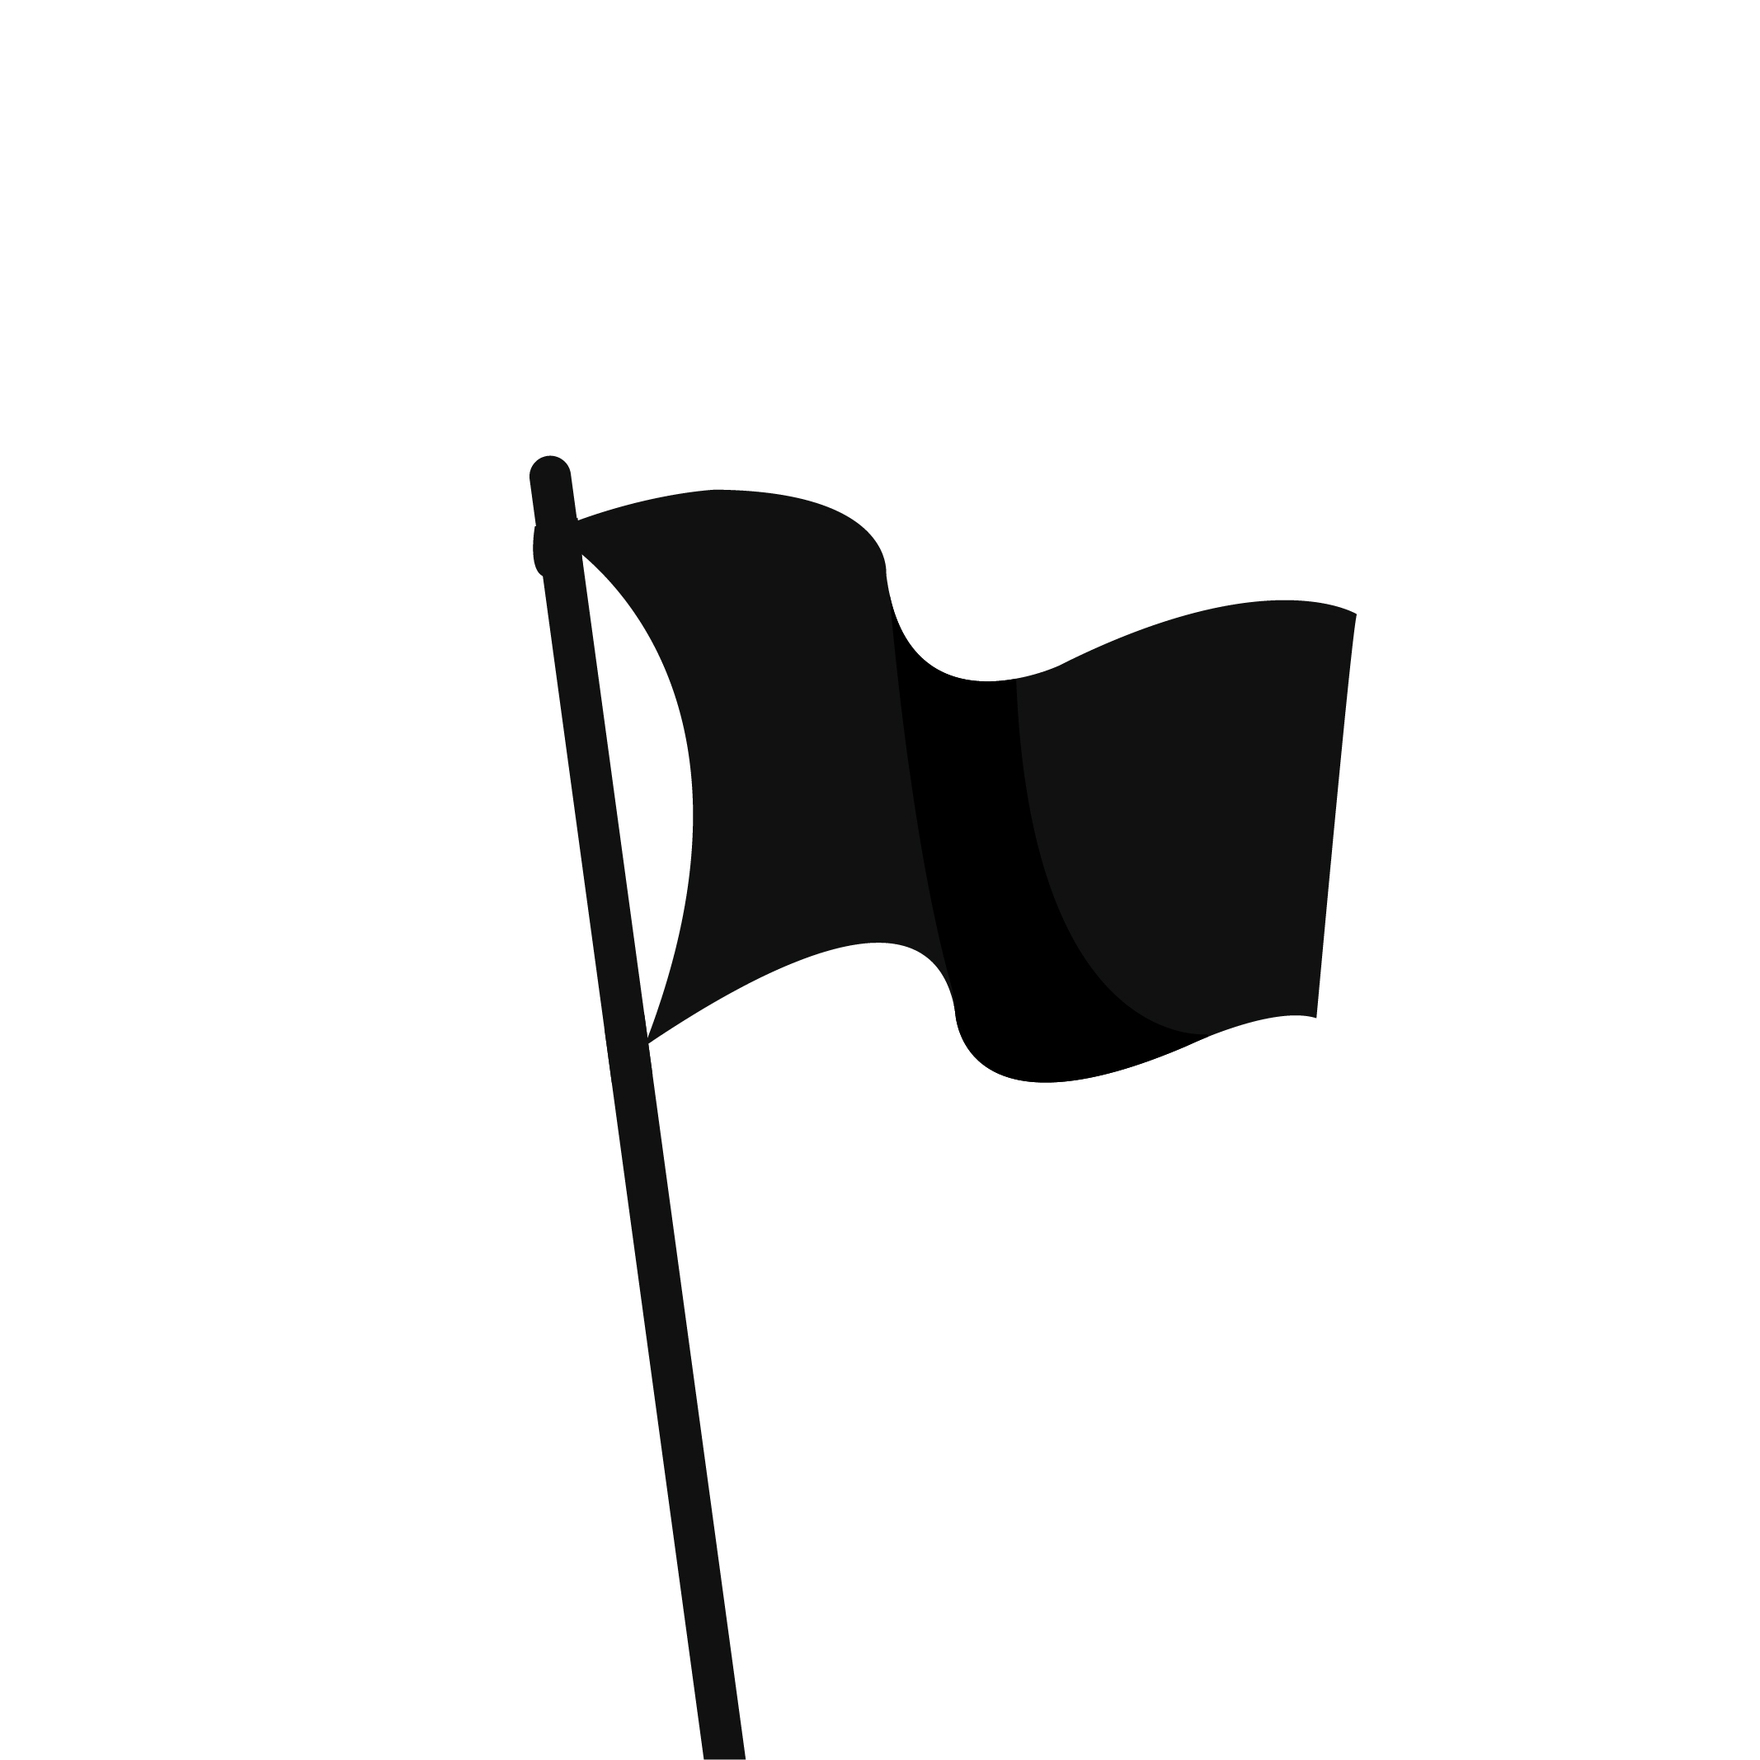 Waving Flag Silhouette in Illustrator, EPS, SVG, JPG, PNG